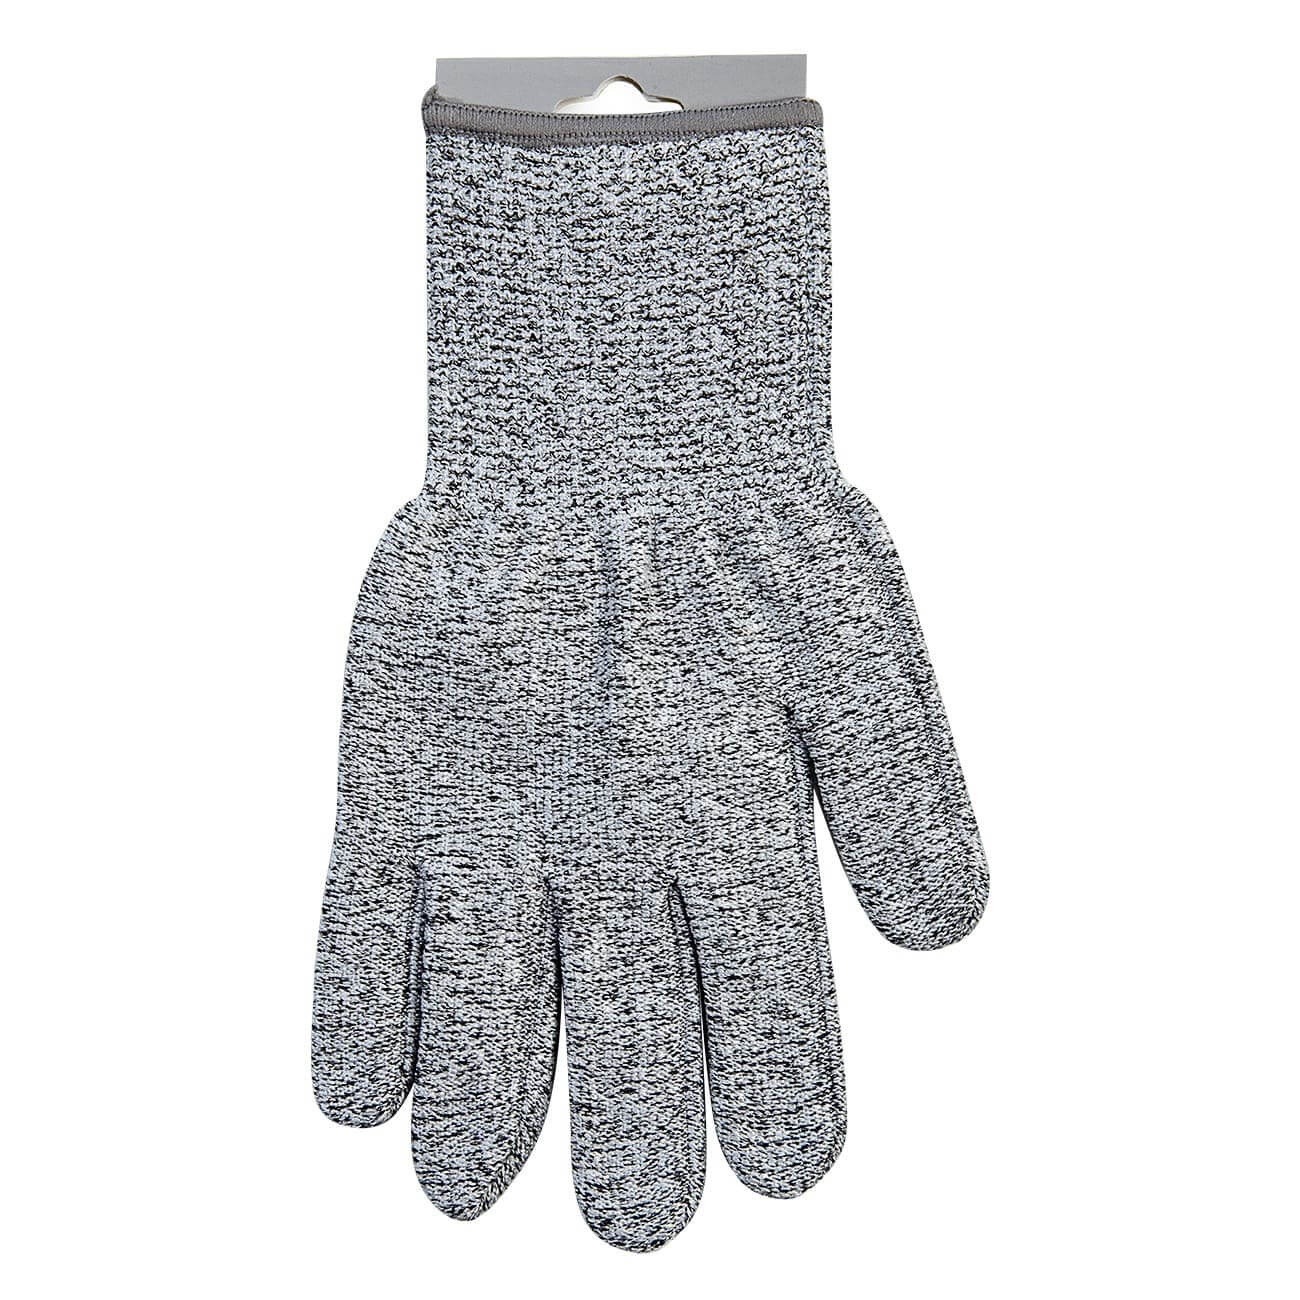 Перчатка для защиты рук, р. M, серая, Security перчатка для уборки 2 шт силиконовая серая clean